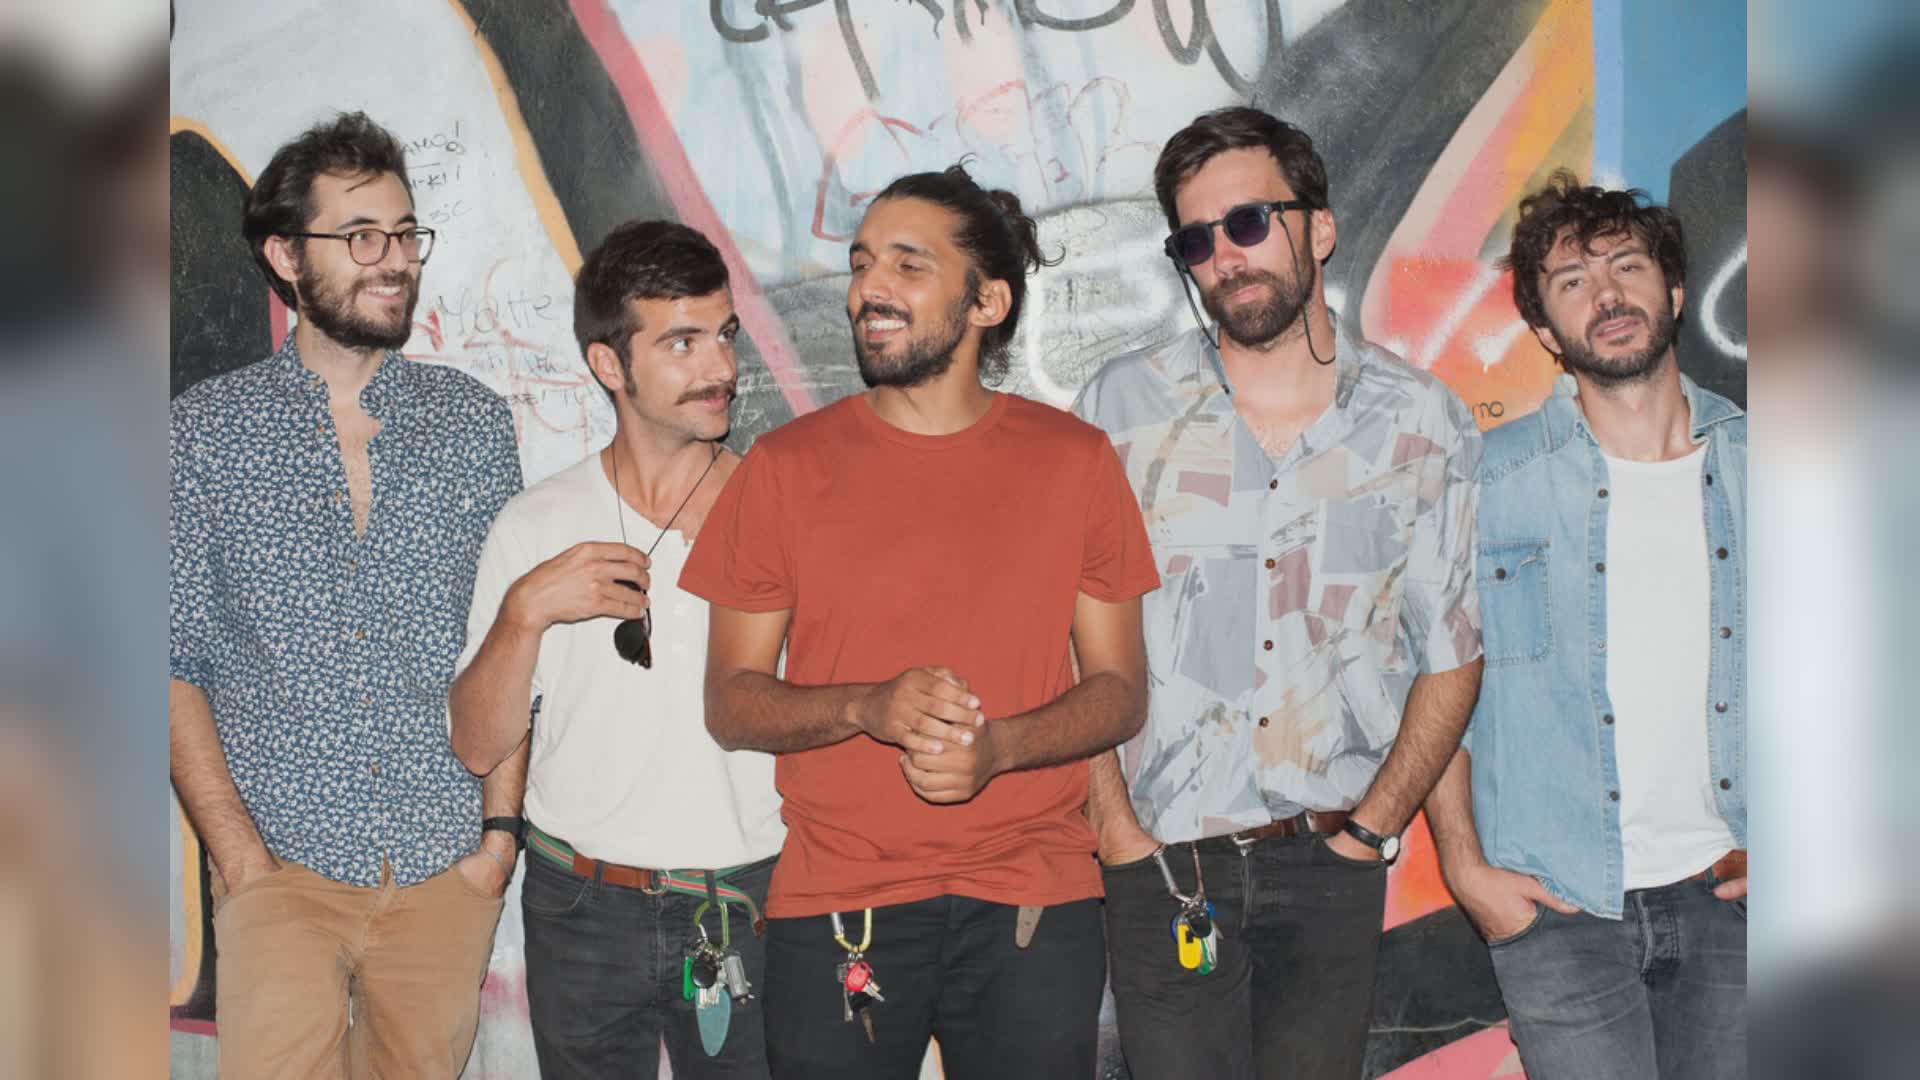 Genova, musica: tornano gli Ex-Otago, esce il nuovo singolo "Con te"